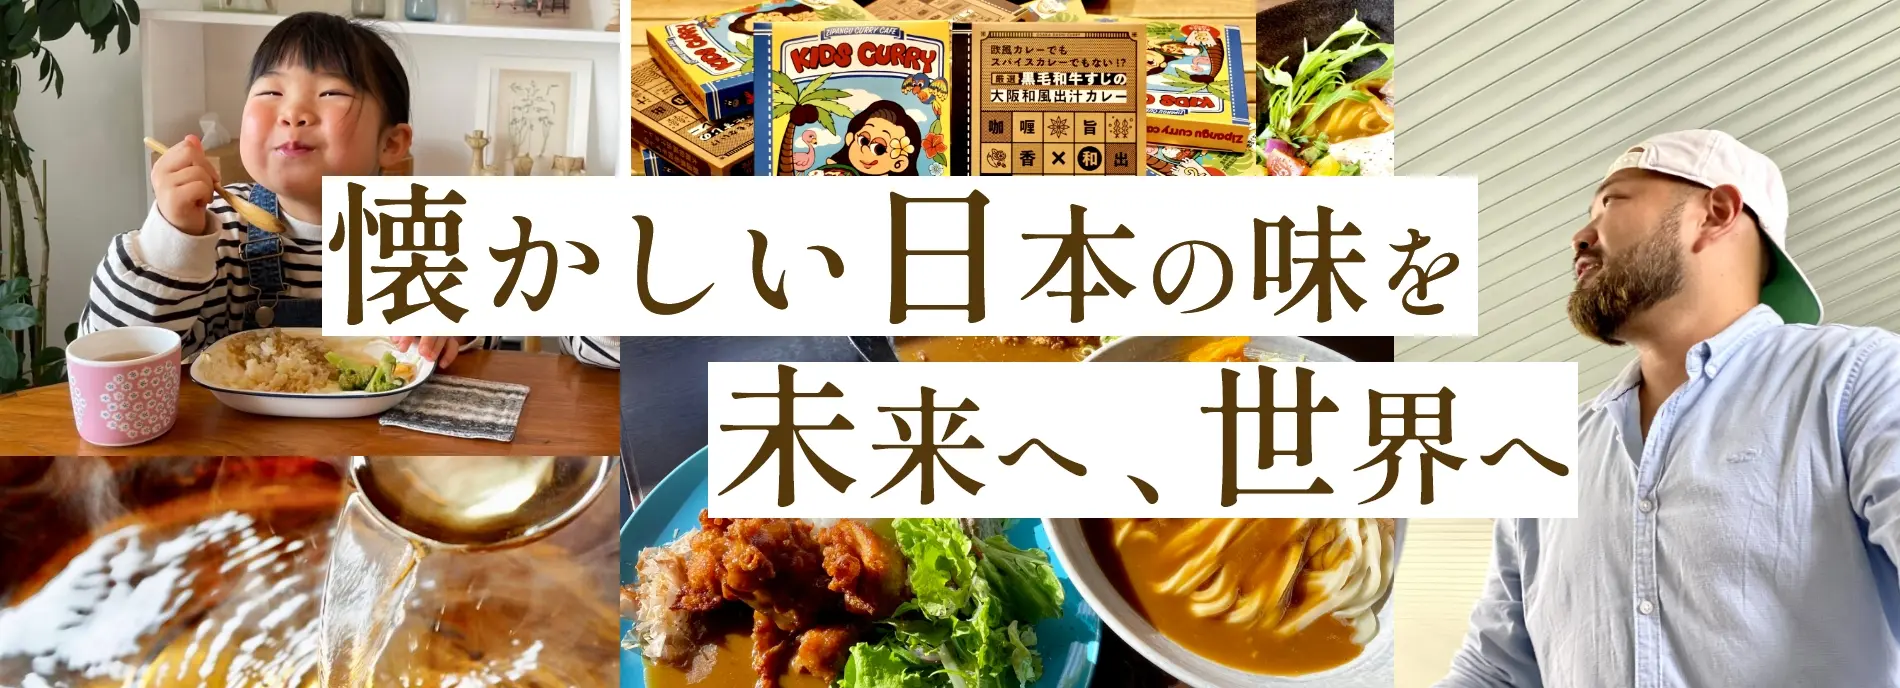 懐かしい日本の味を未来へ、世界へ